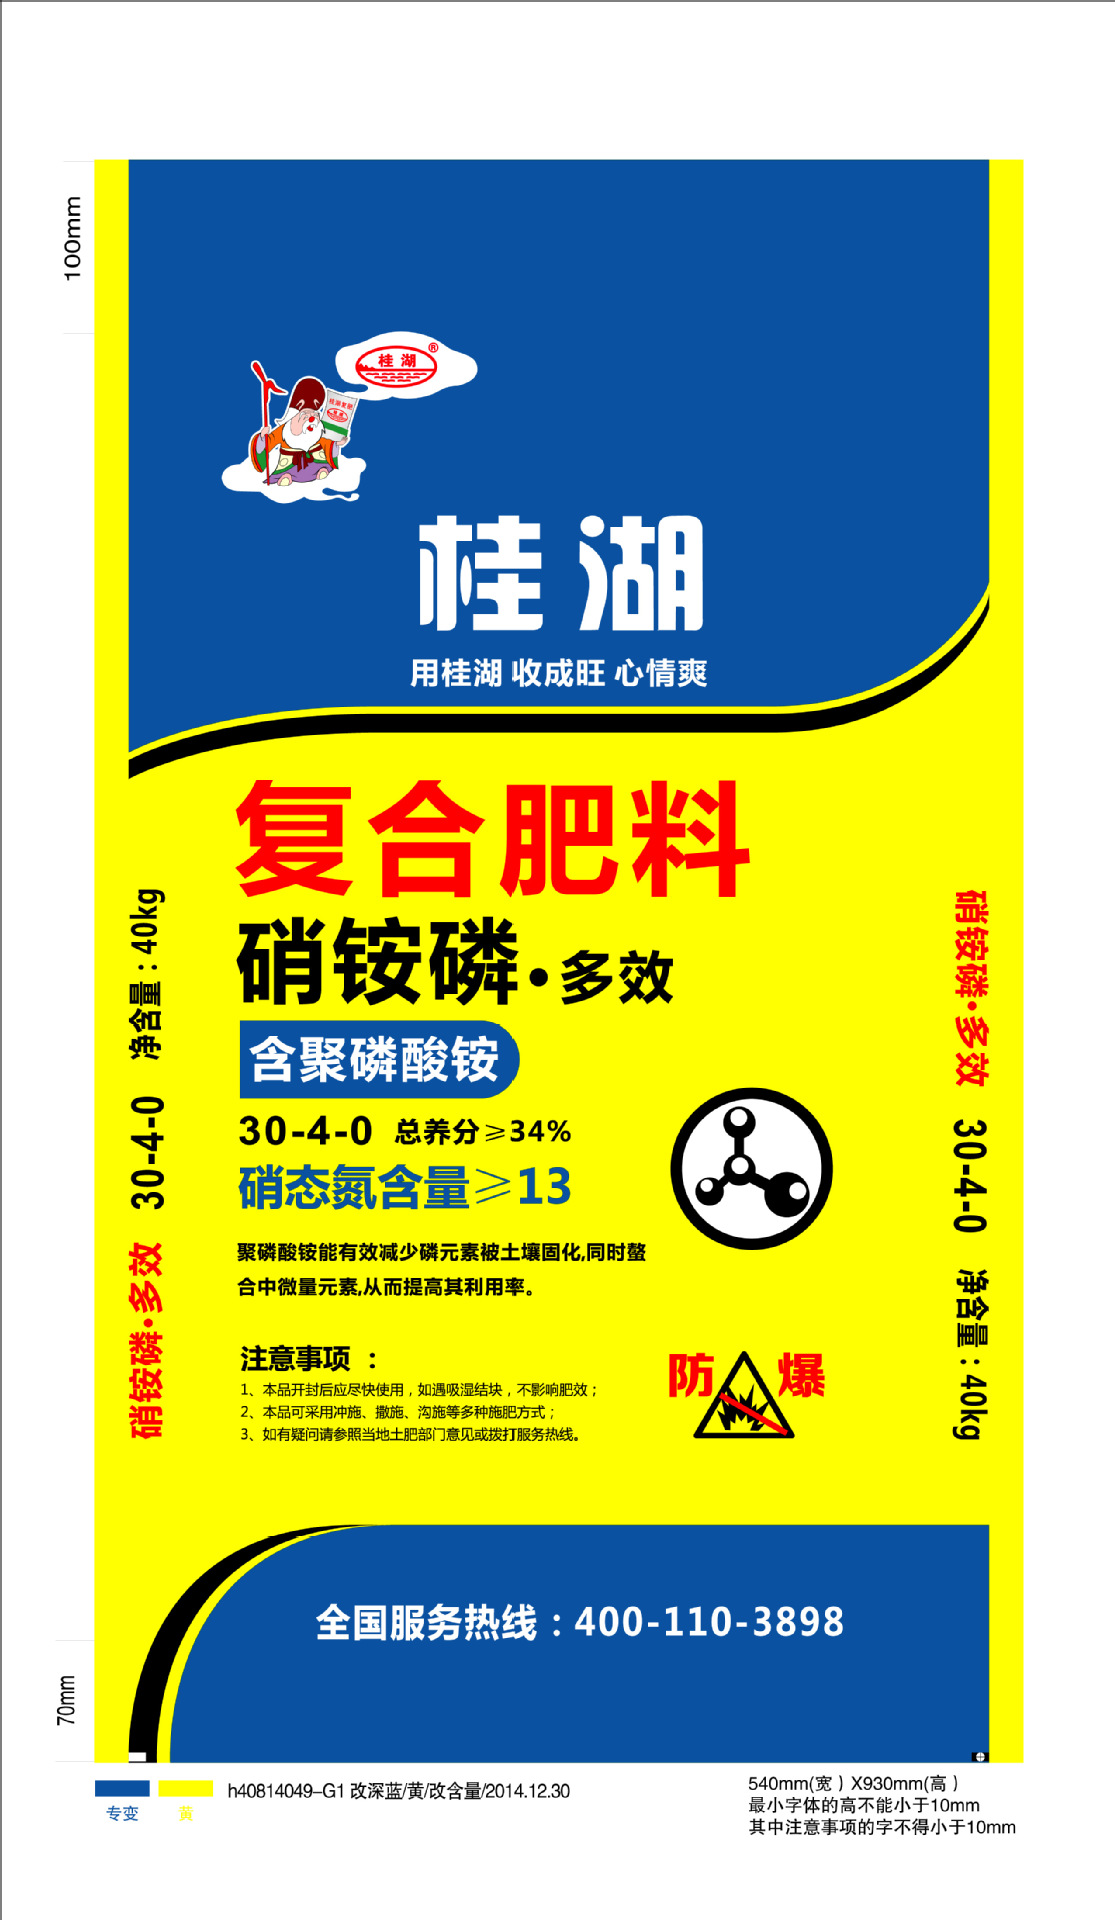 桂湖牌复合肥产品图片图片